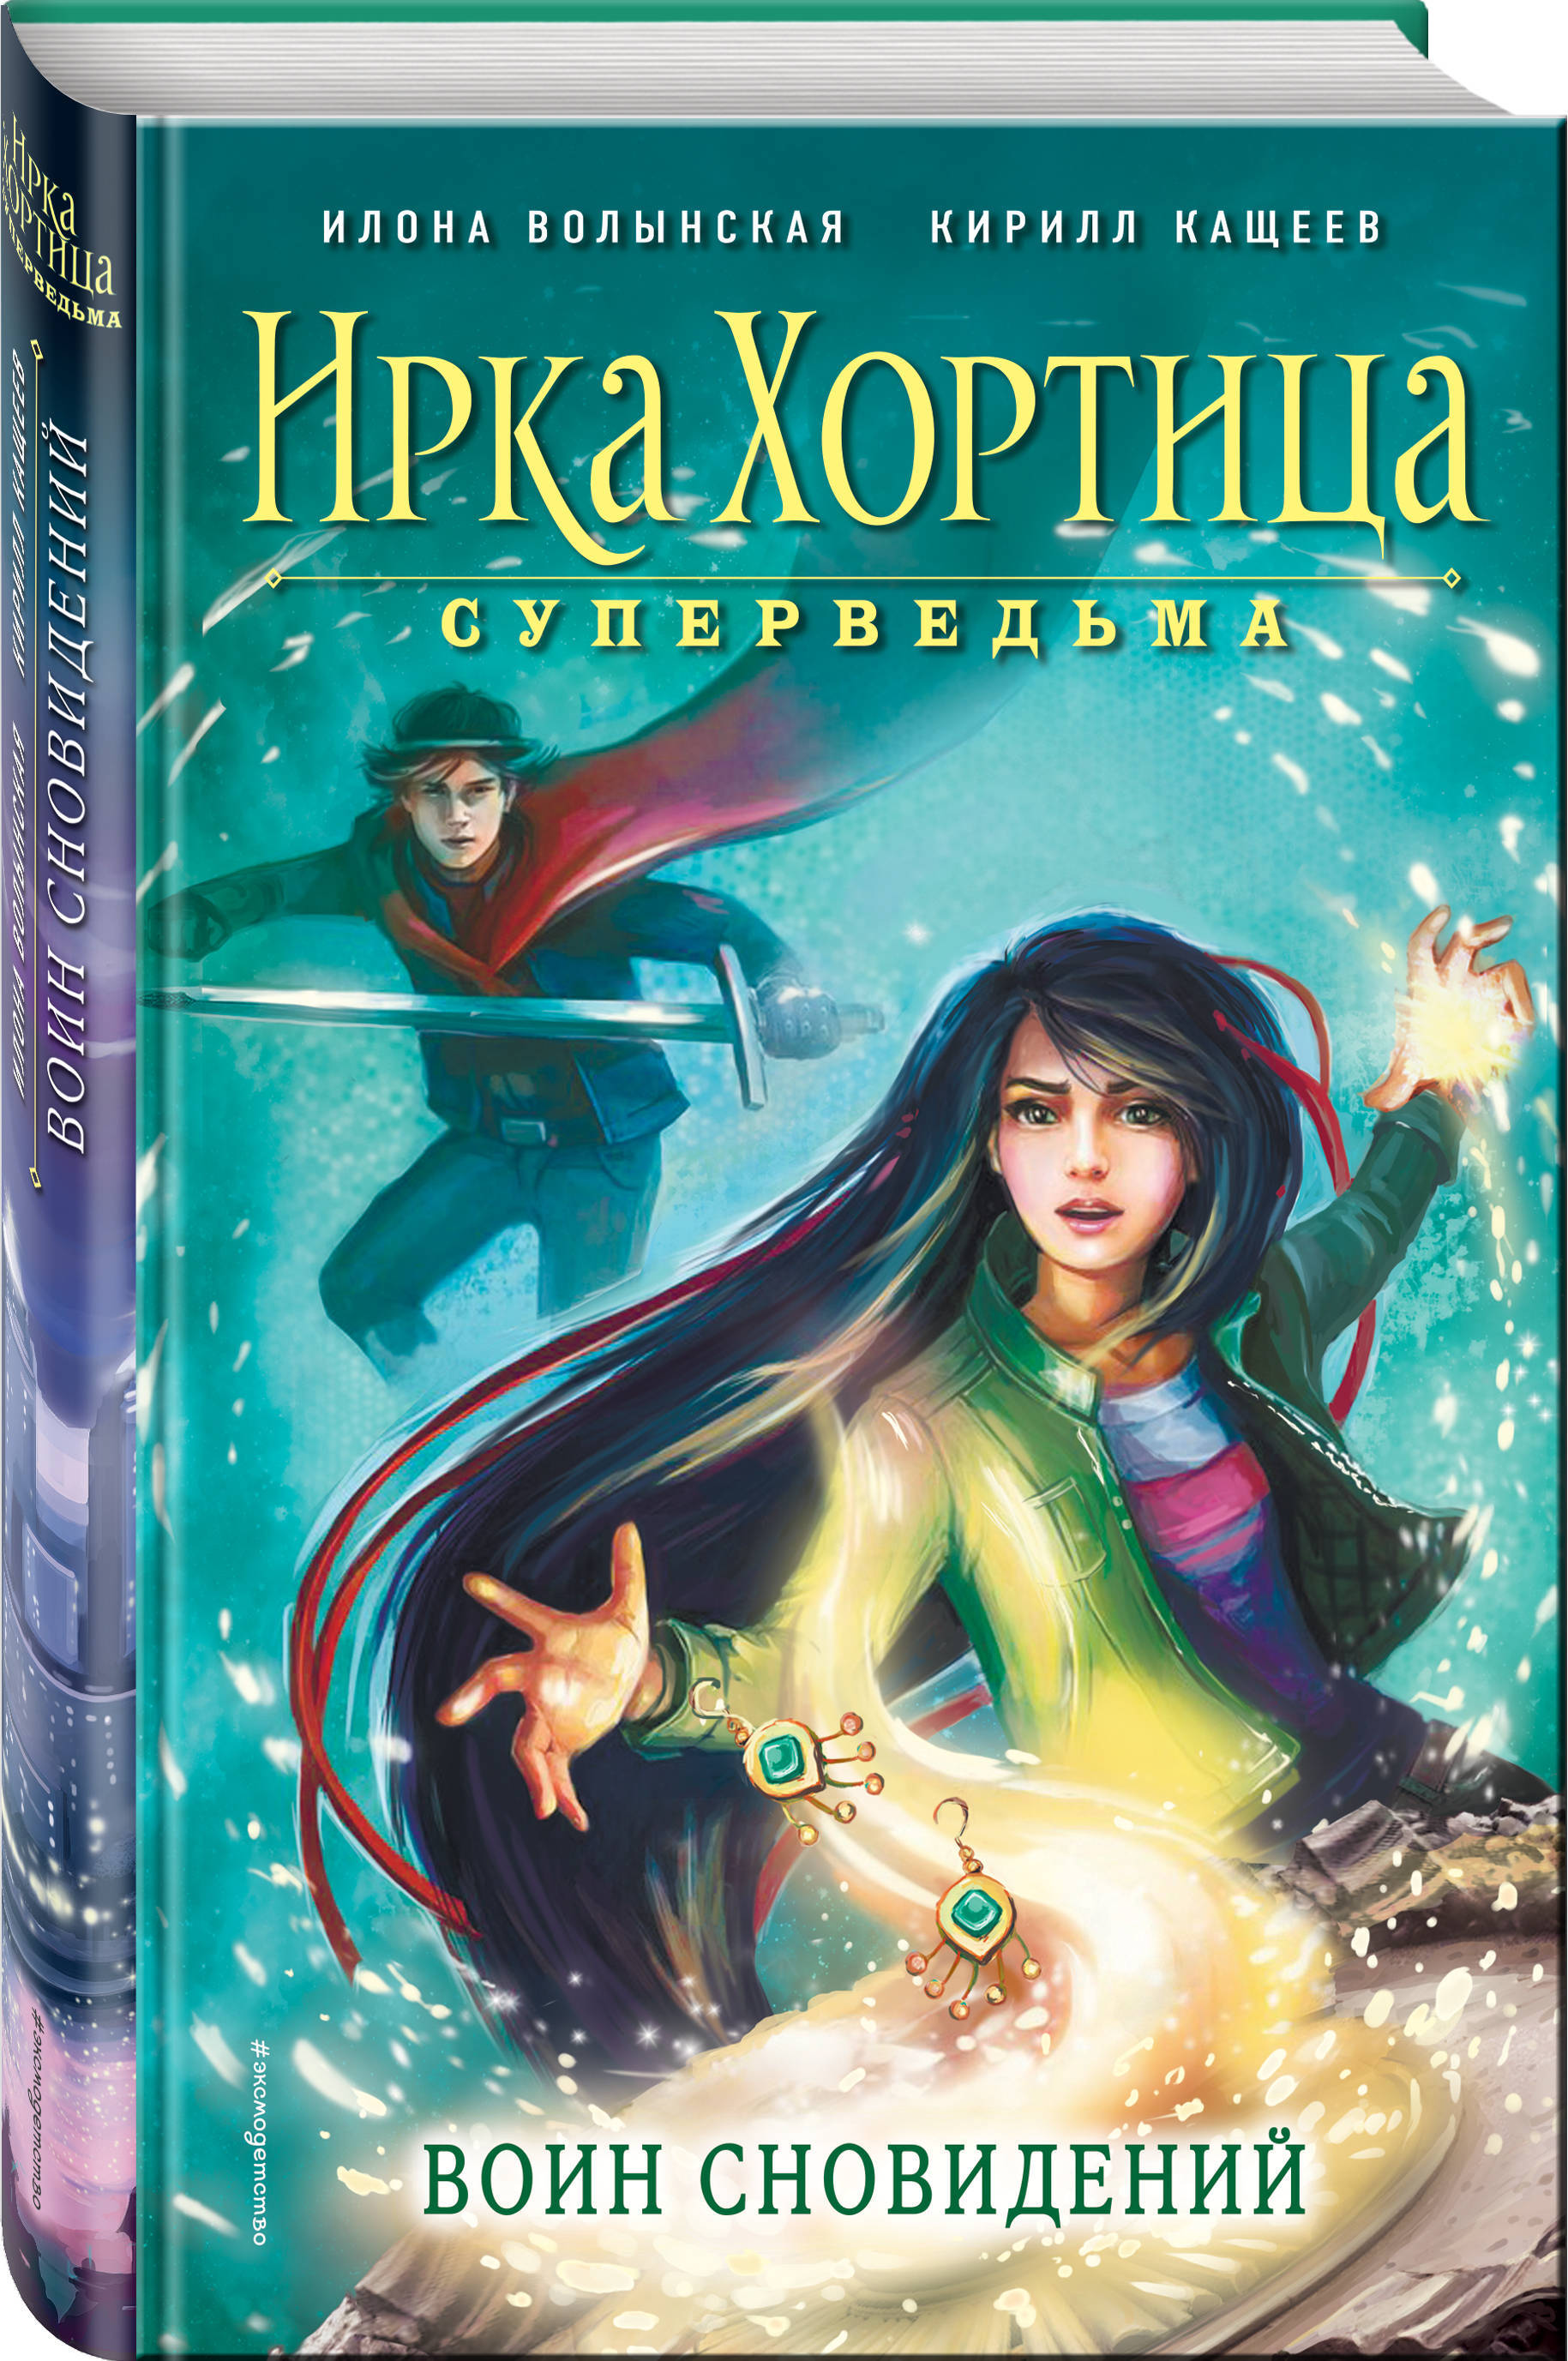 Книги 12 приключения. Ирка Хортица - суперведьма! Книга.